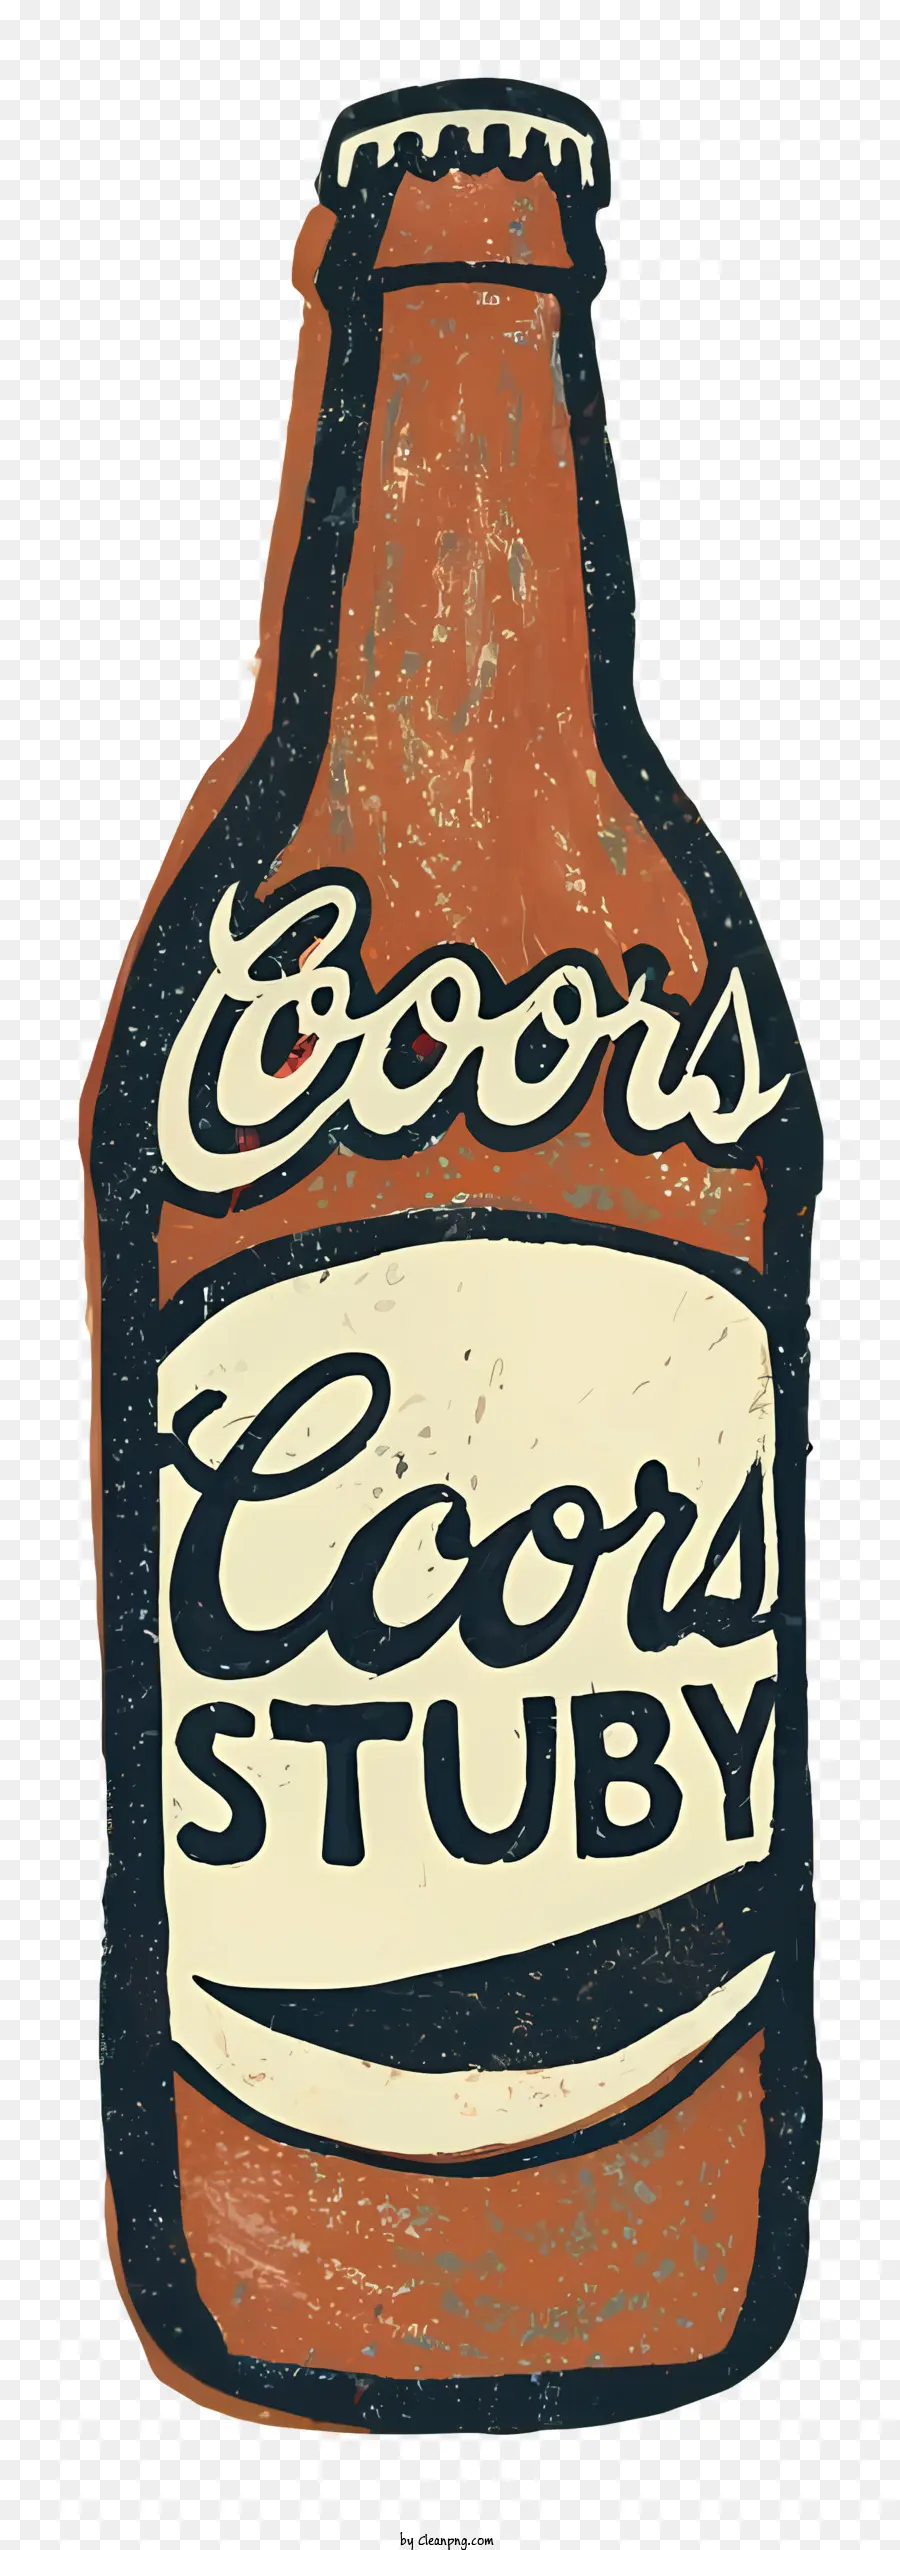 Cobra Stud Beer Clear Glass Glass Bottle Brown Etichetta marrone Script a mano Font Bottle - Una bottiglia vintage e limpida di birra in vetro etichettato 